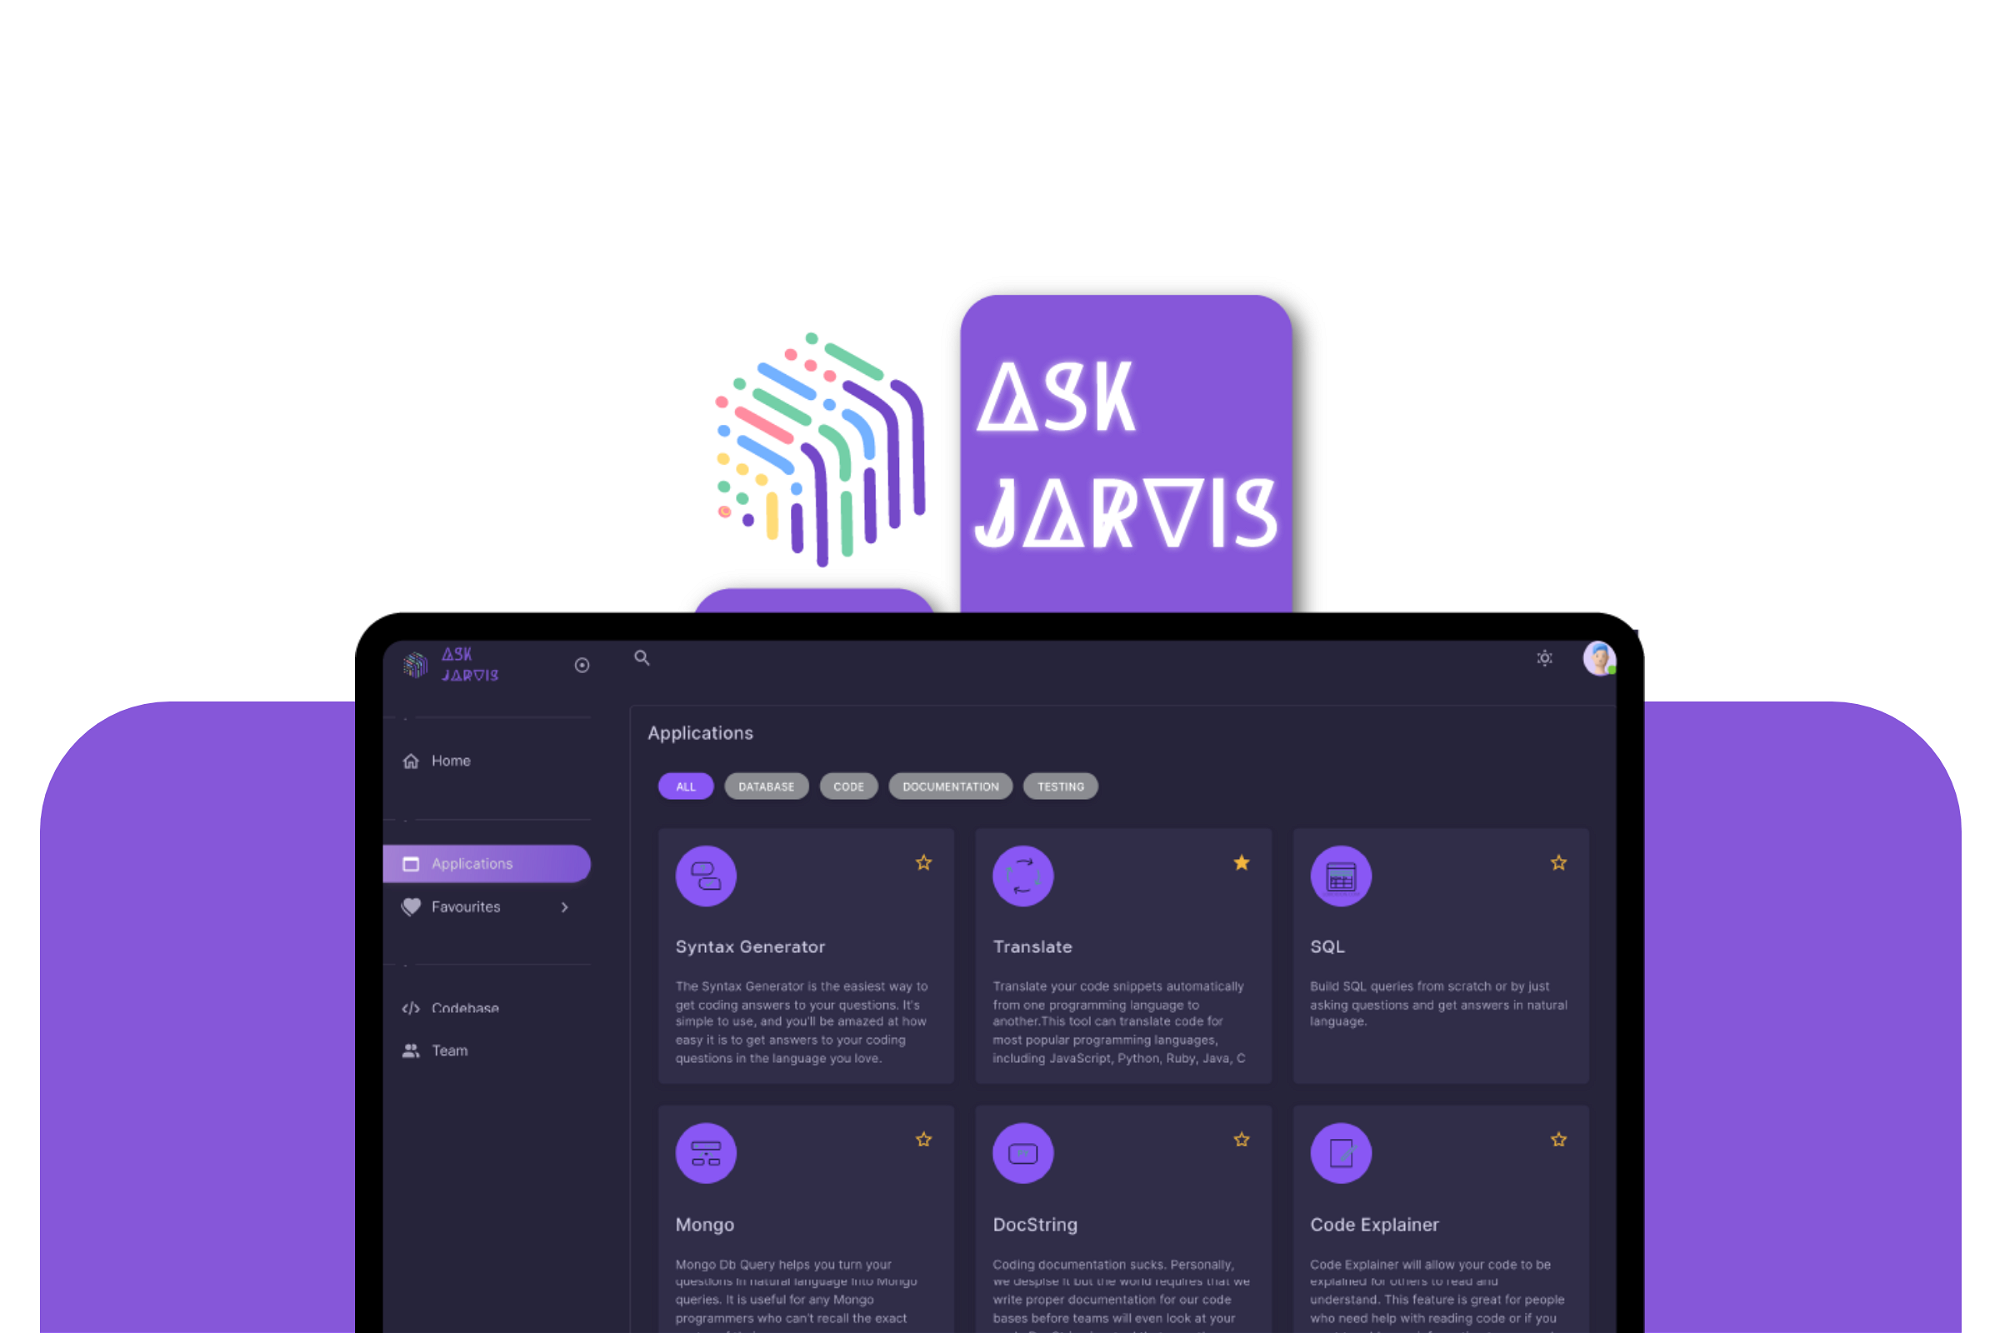 AppSumo Deal for AskJarvis